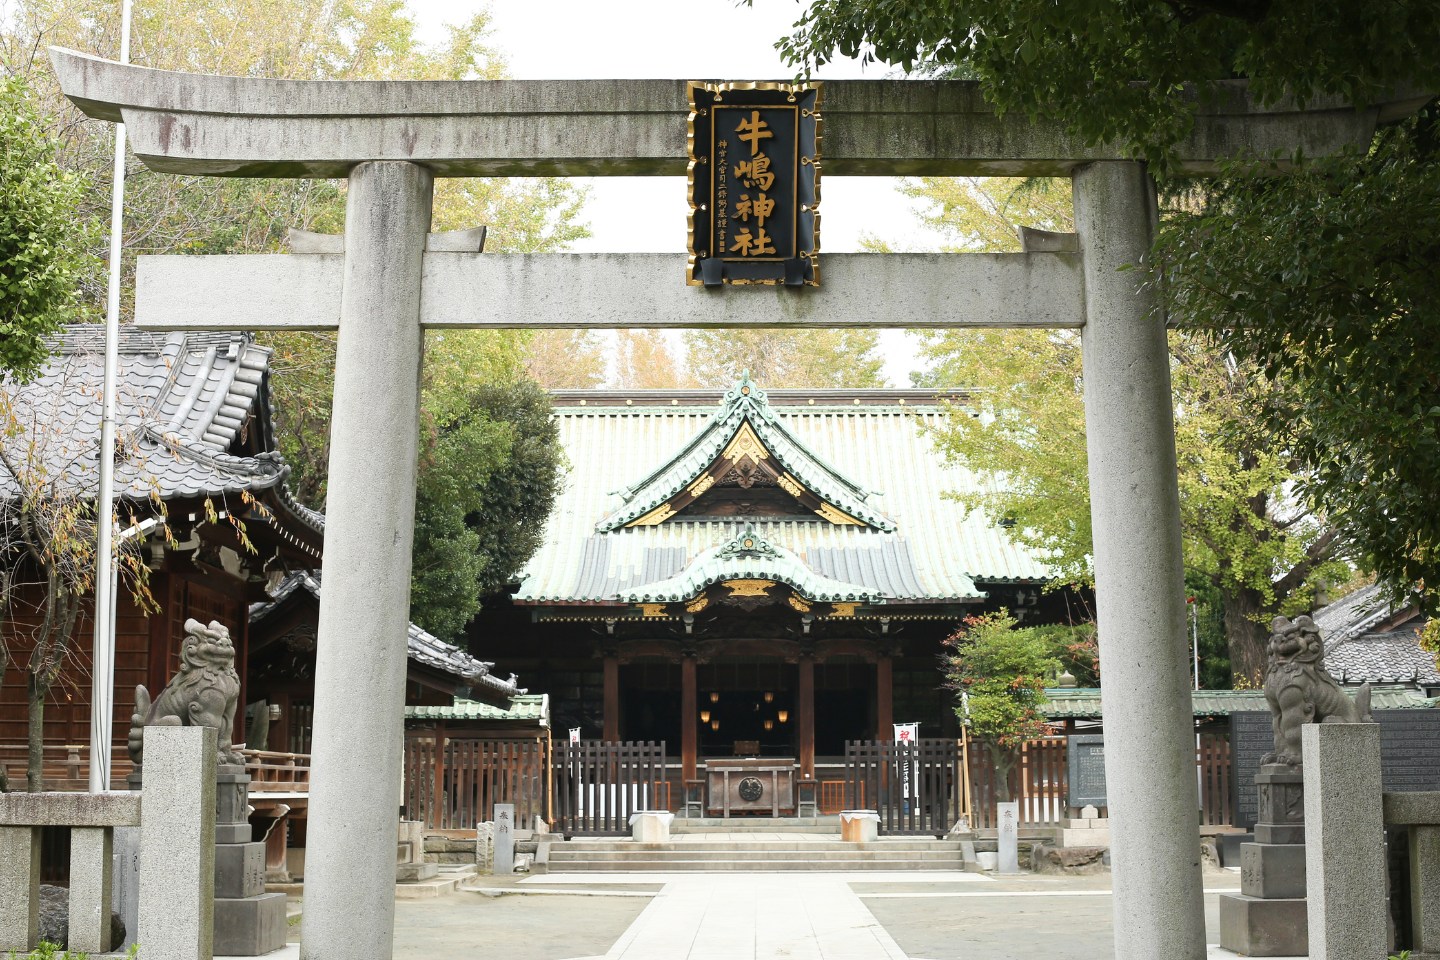 牛嶋神社 鳥居から本殿を望む